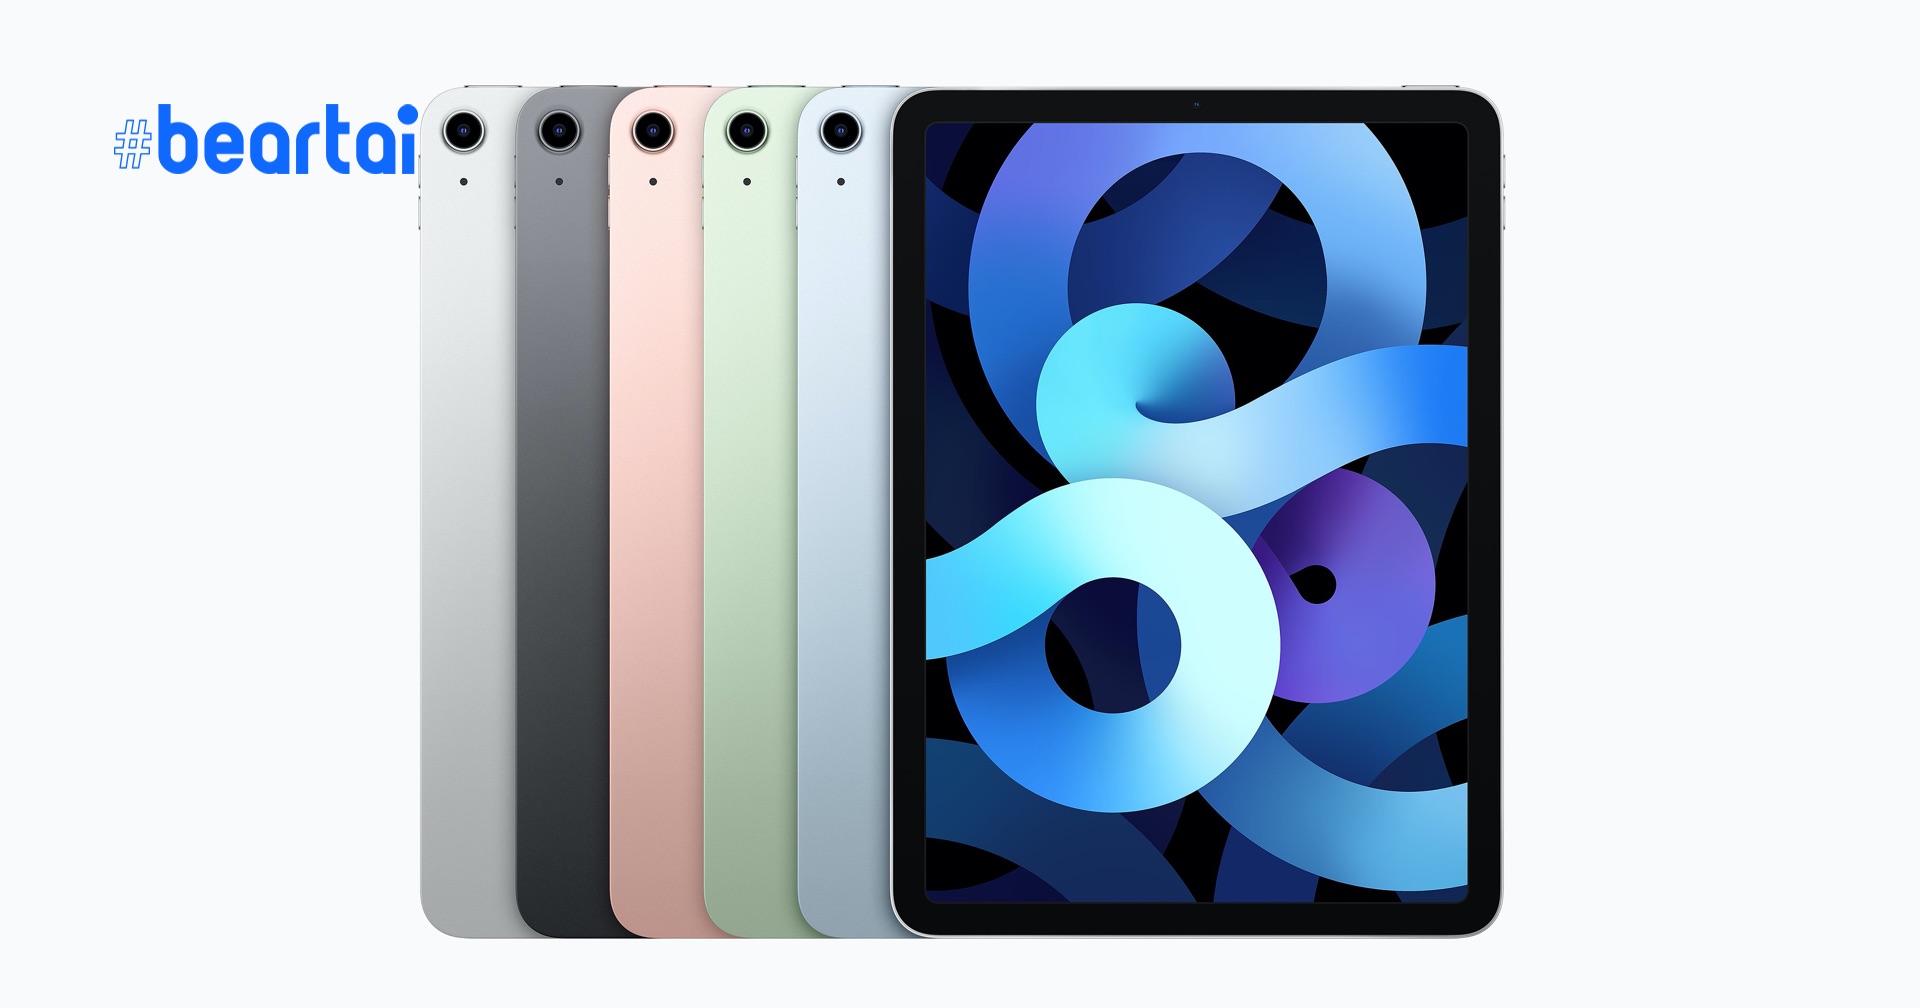 เปิดคะแนน Apple A14 Bionic รุ่นใหม่ จะแรงกว่า iPad Pro หรือไม่ มาดูกัน